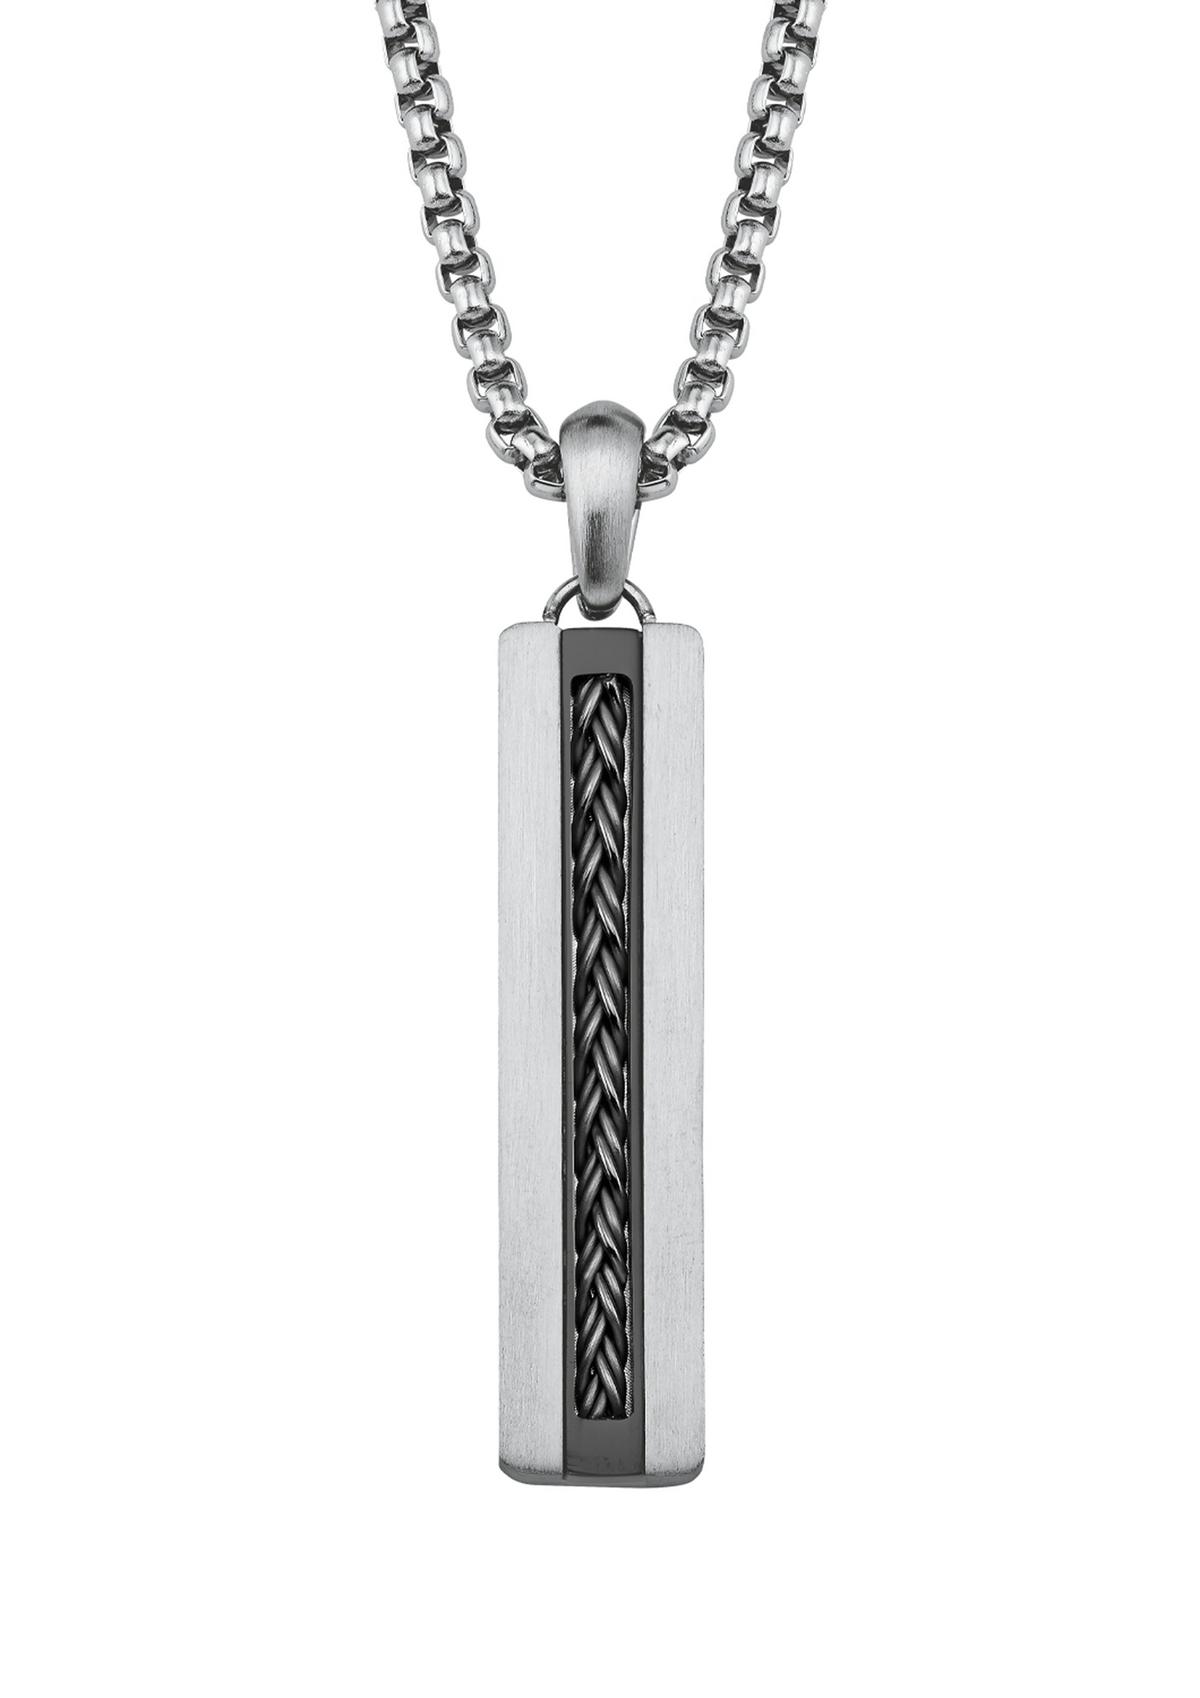 Halskette mit Kreuz-Anhänger silber 